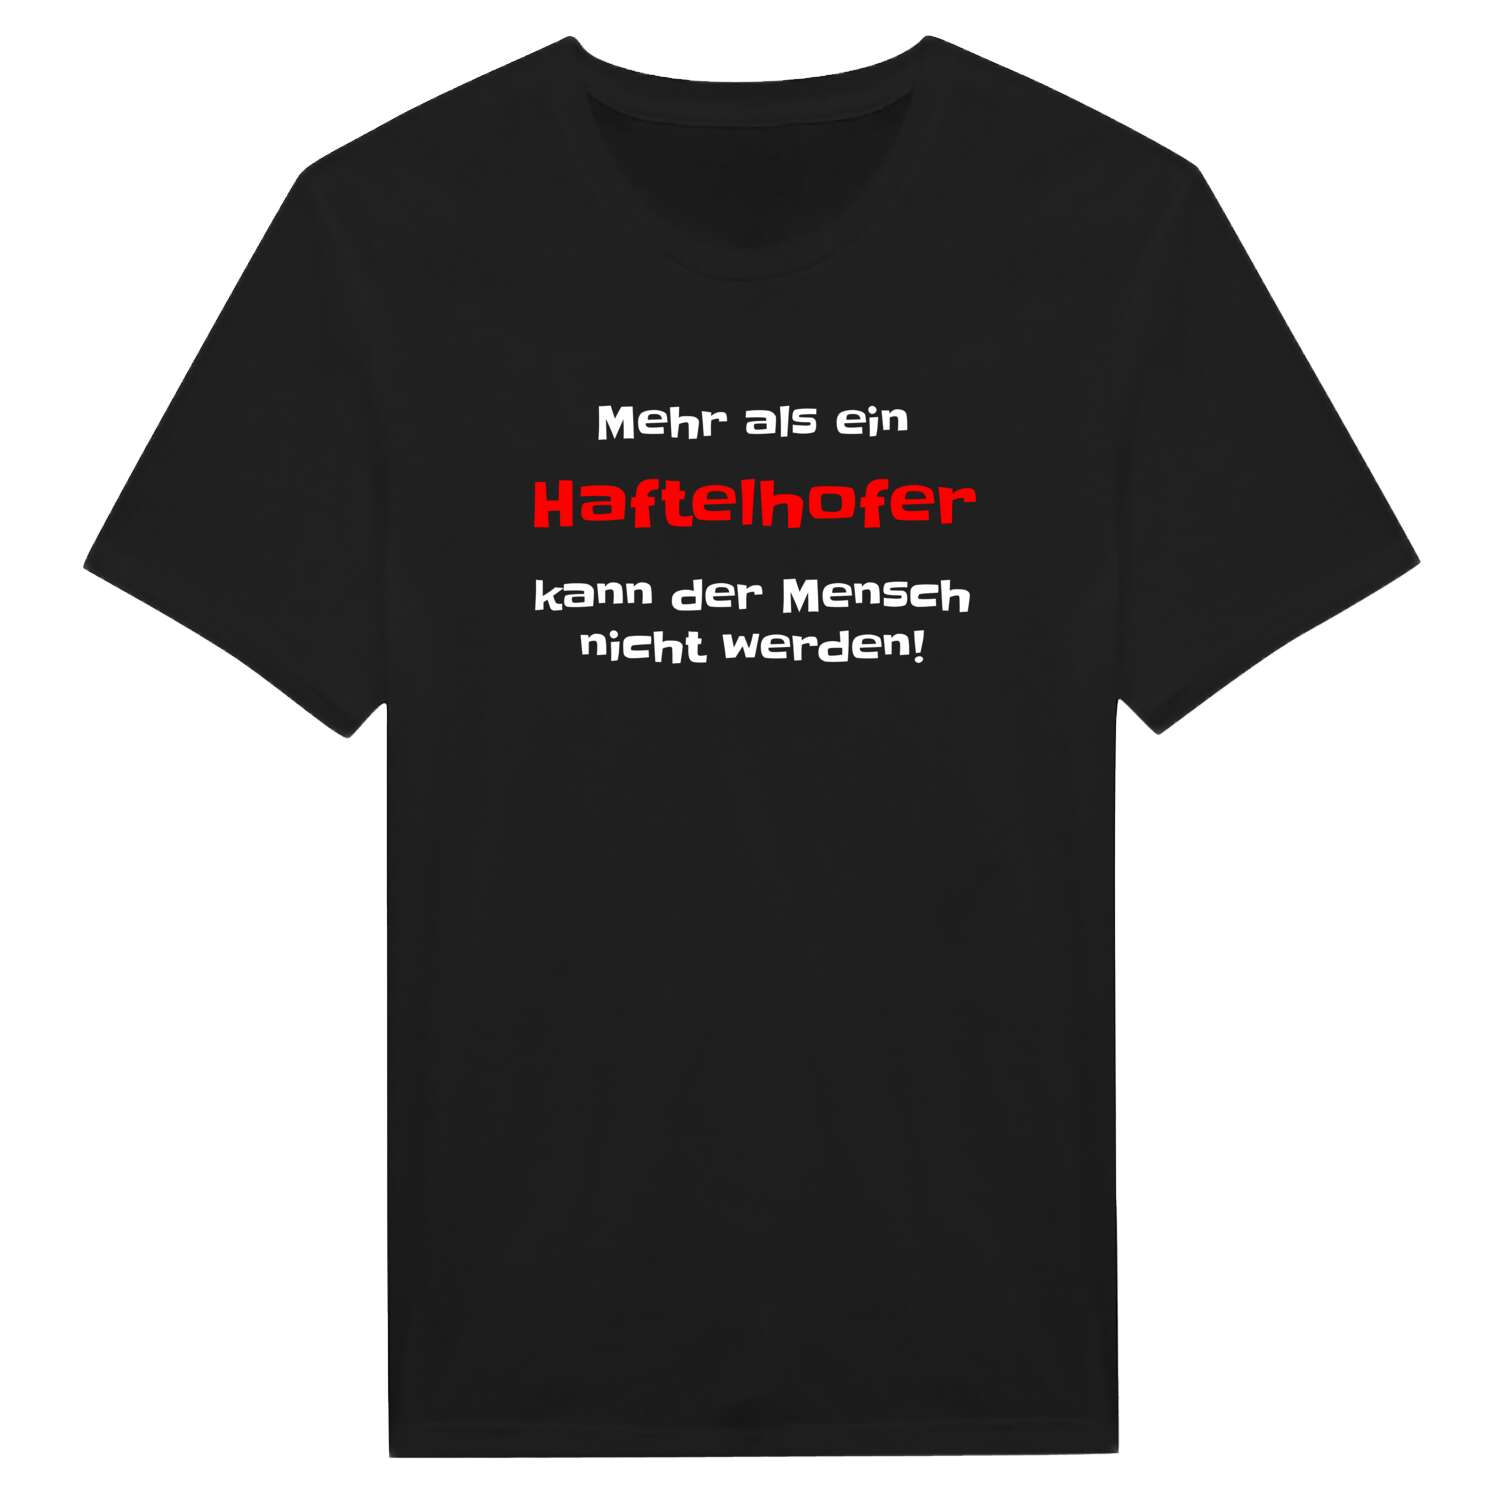 Haftelhof T-Shirt »Mehr als ein«